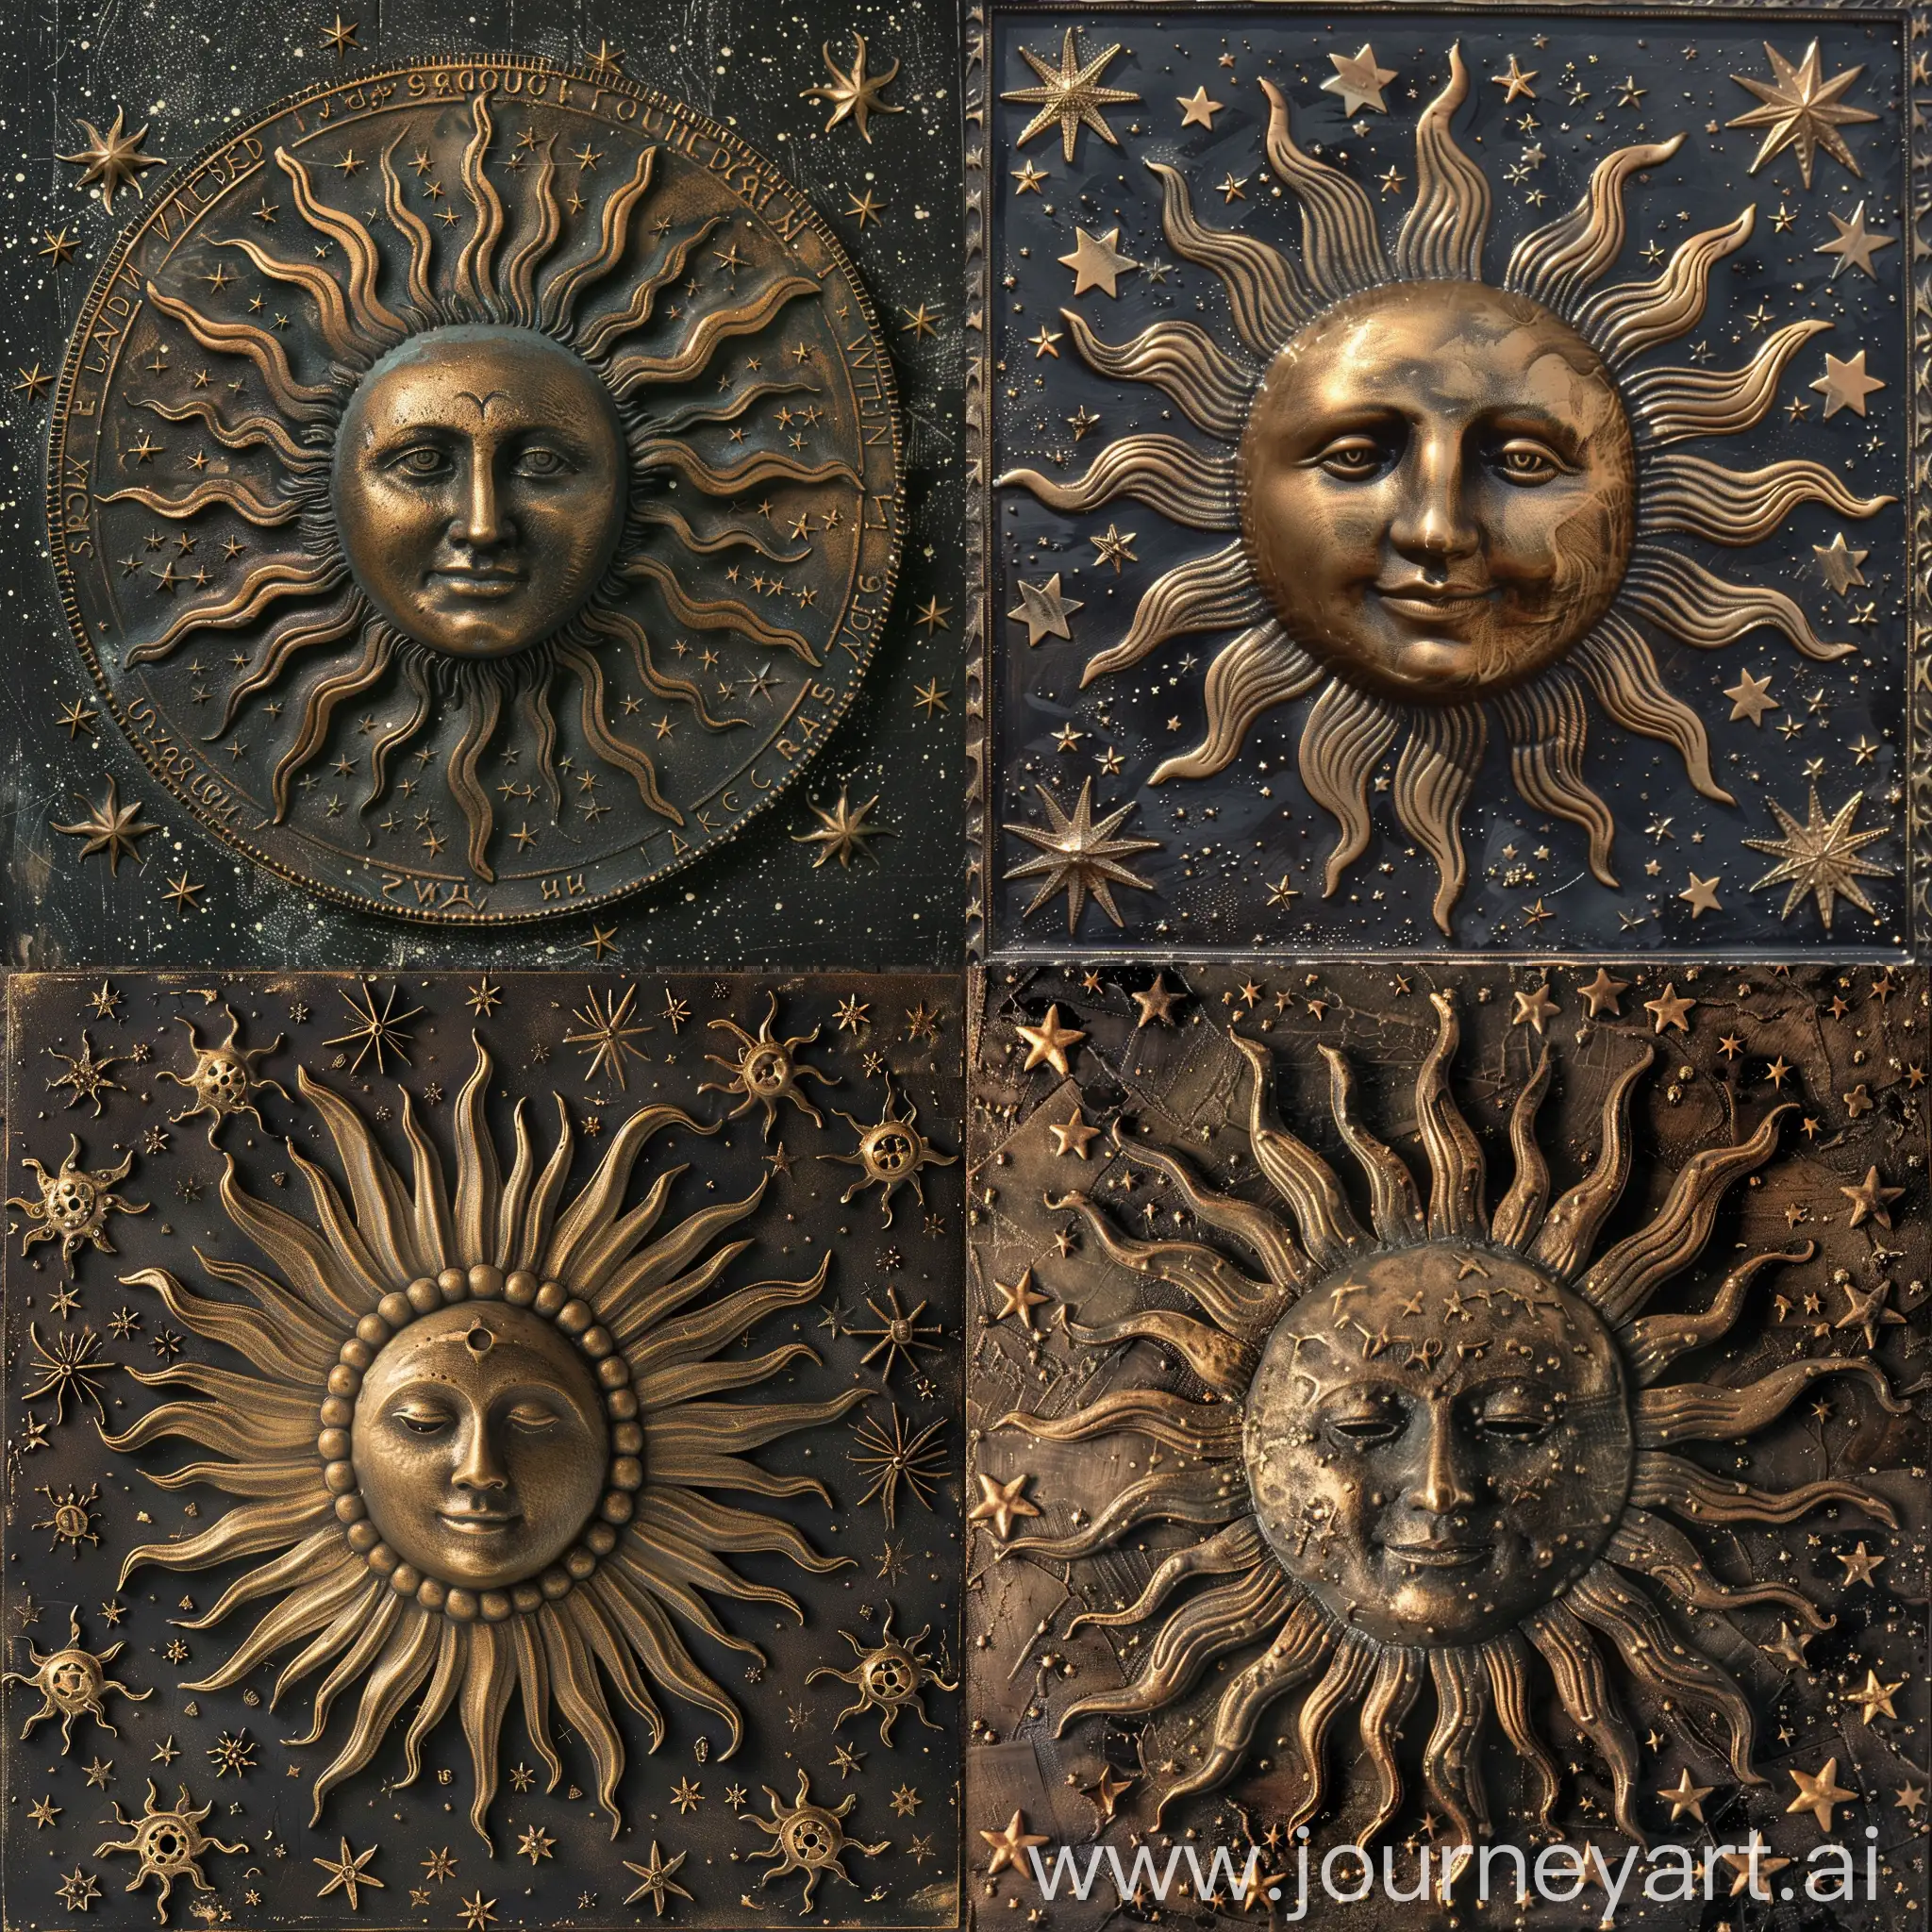 Декоративное бронзовое с лучами языческое солнце  в звездном космосе, профессиональное фото ,высокое качество, много мелких деталей